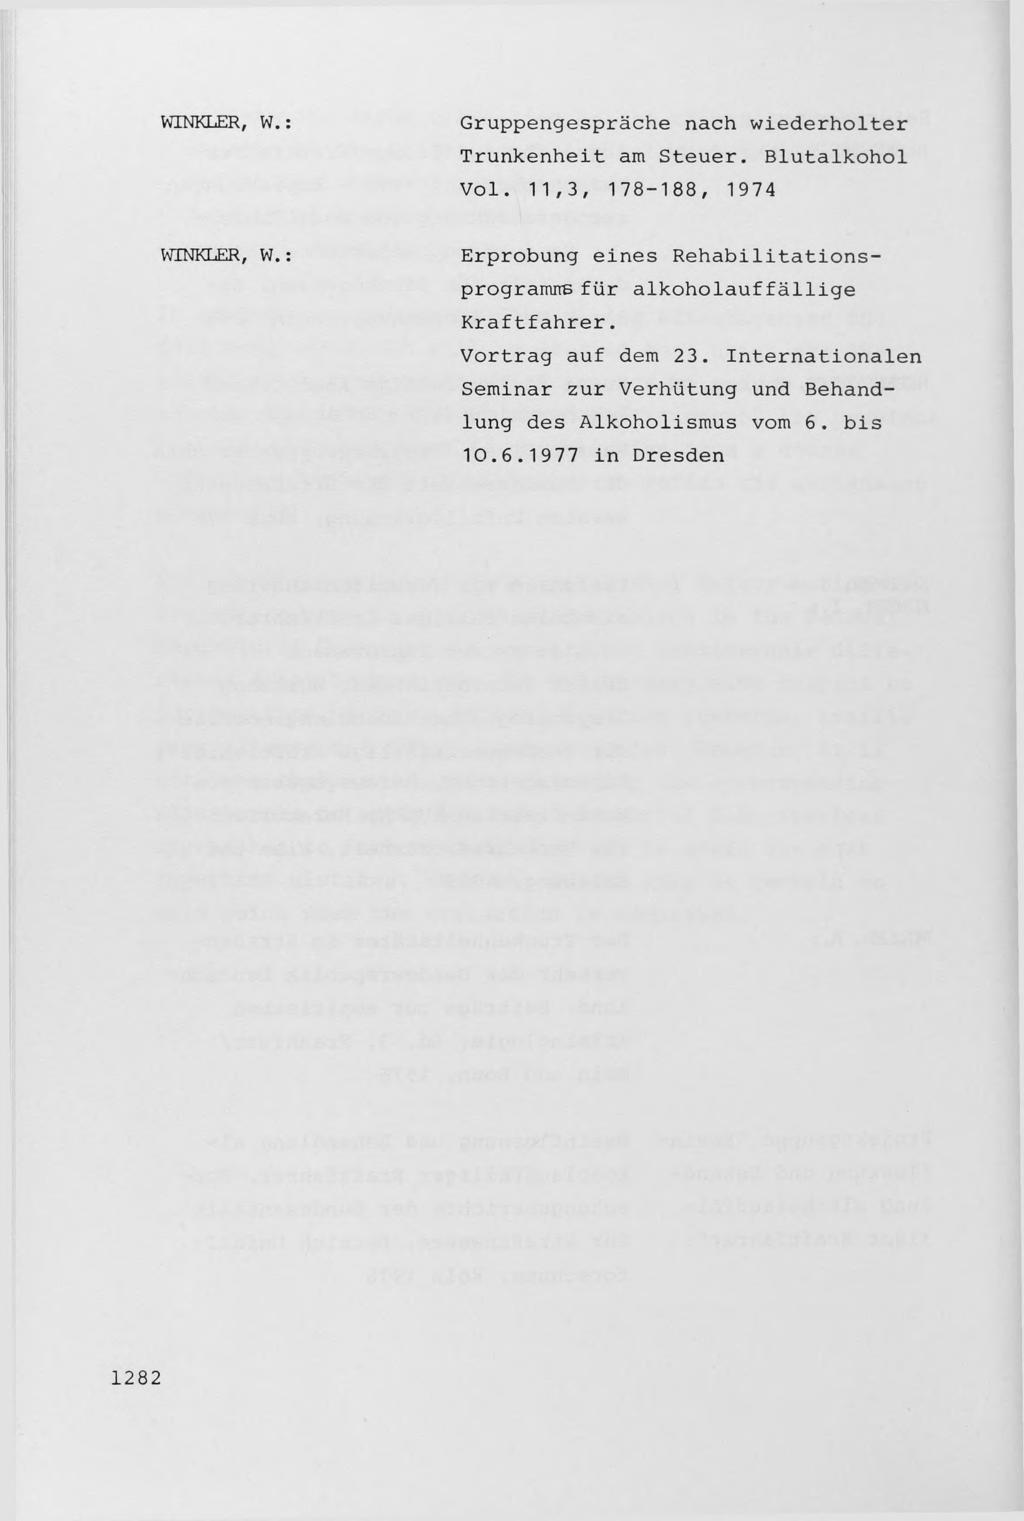 WINKLER, W. Gruppengesprache nach wiederholter Trunkenheit am Steuer. Blutalkohol Vol. 11,3, 178-188, 1974 WINKLER, W.